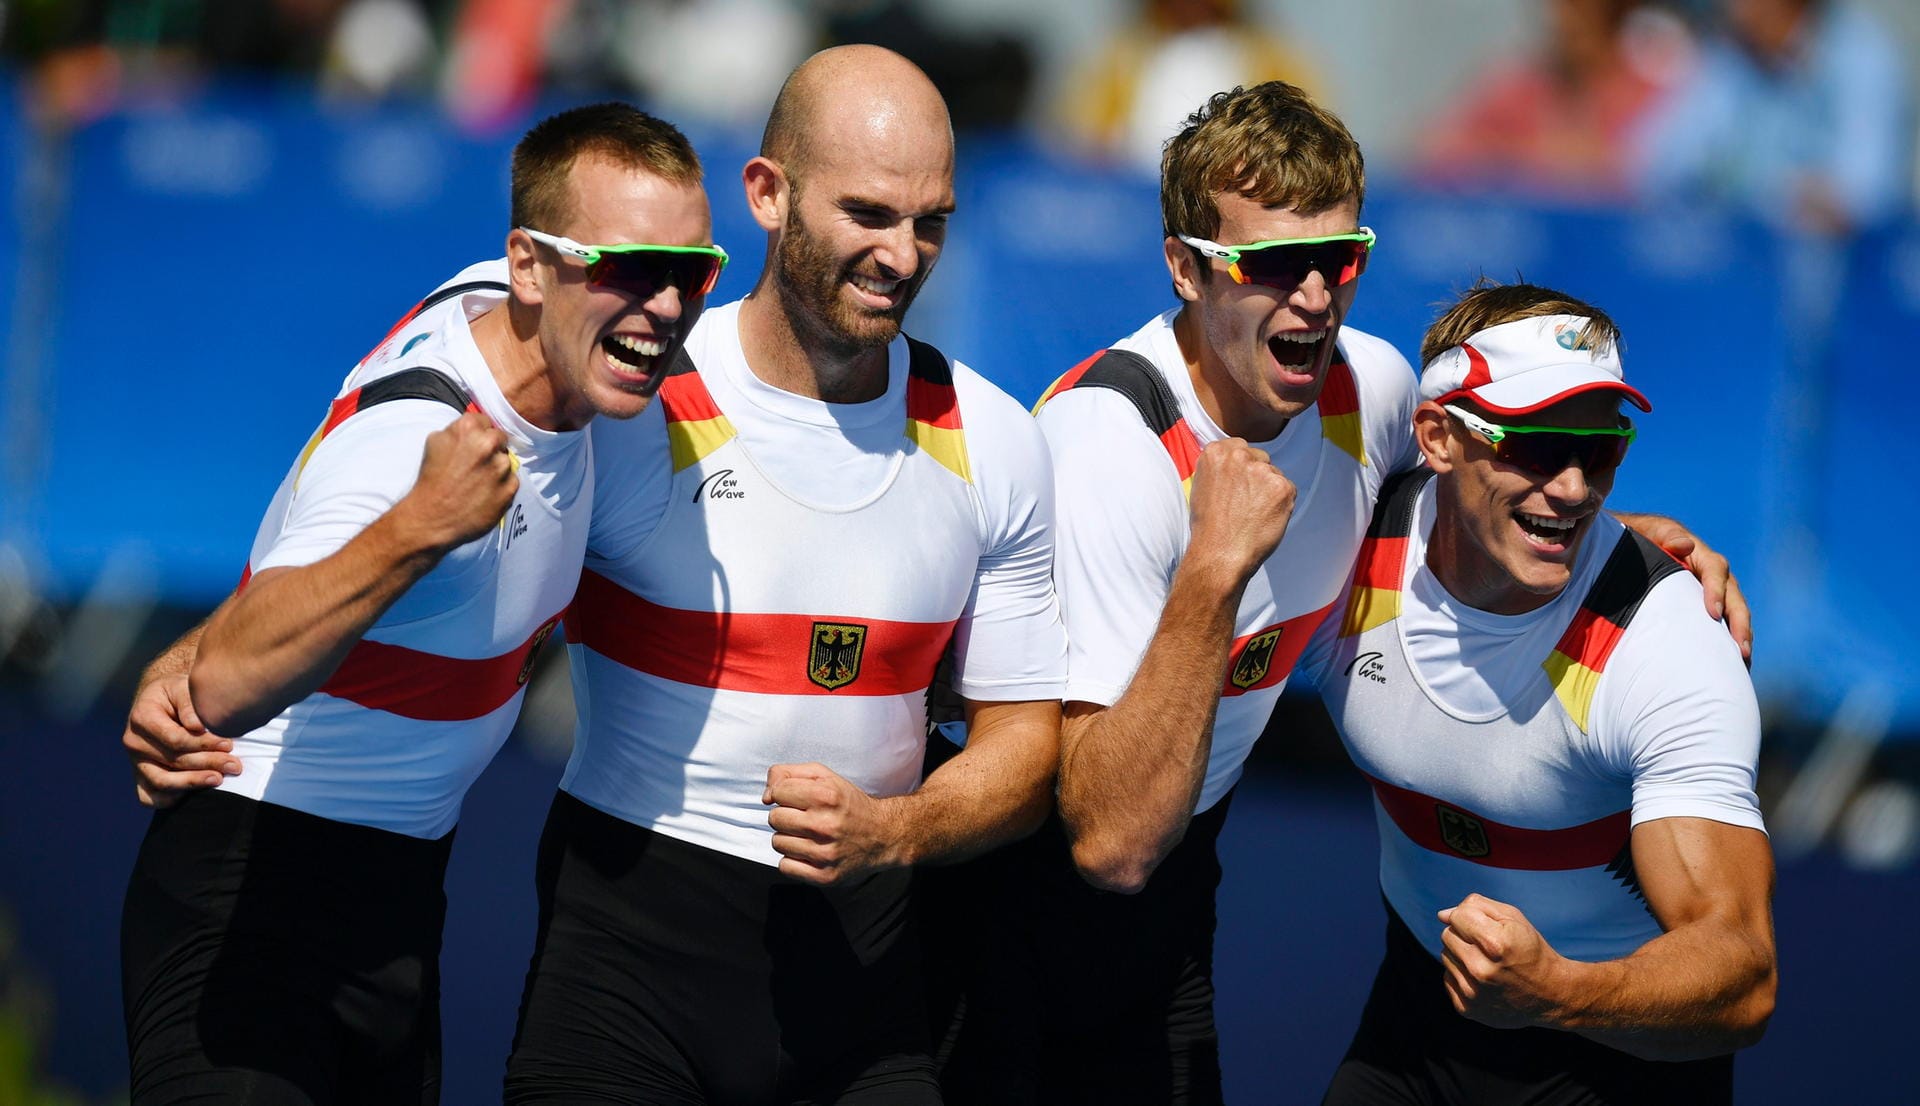 So sehen Sieger aus: Hans Gruhne, Karl Schulze, Lauritz Schoof und Philipp Wende (v.li.) feiern ihre Goldmedaille für Deutschland im Rudern.